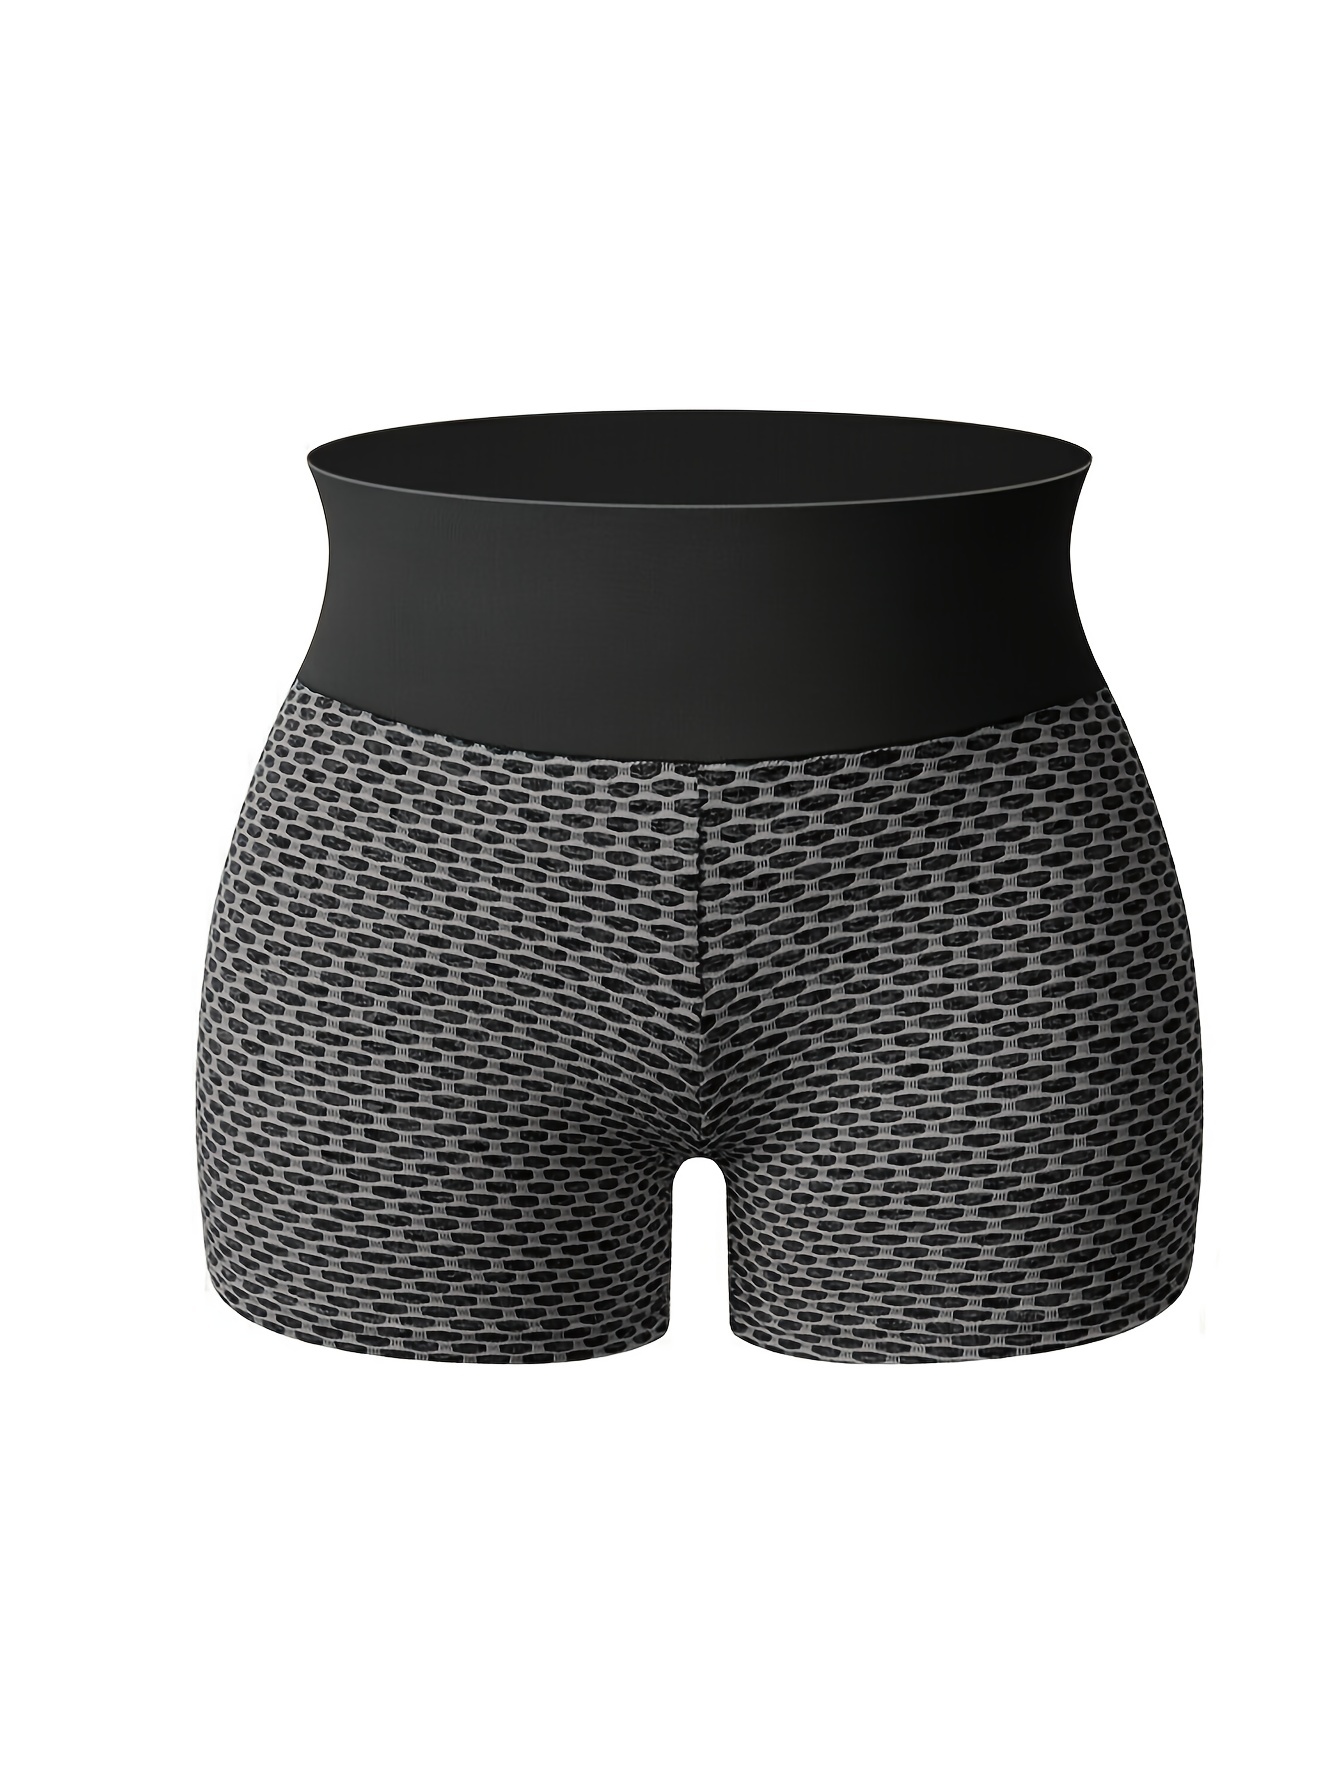  Leggings for Women Honeycomb Textured Biker Shorts